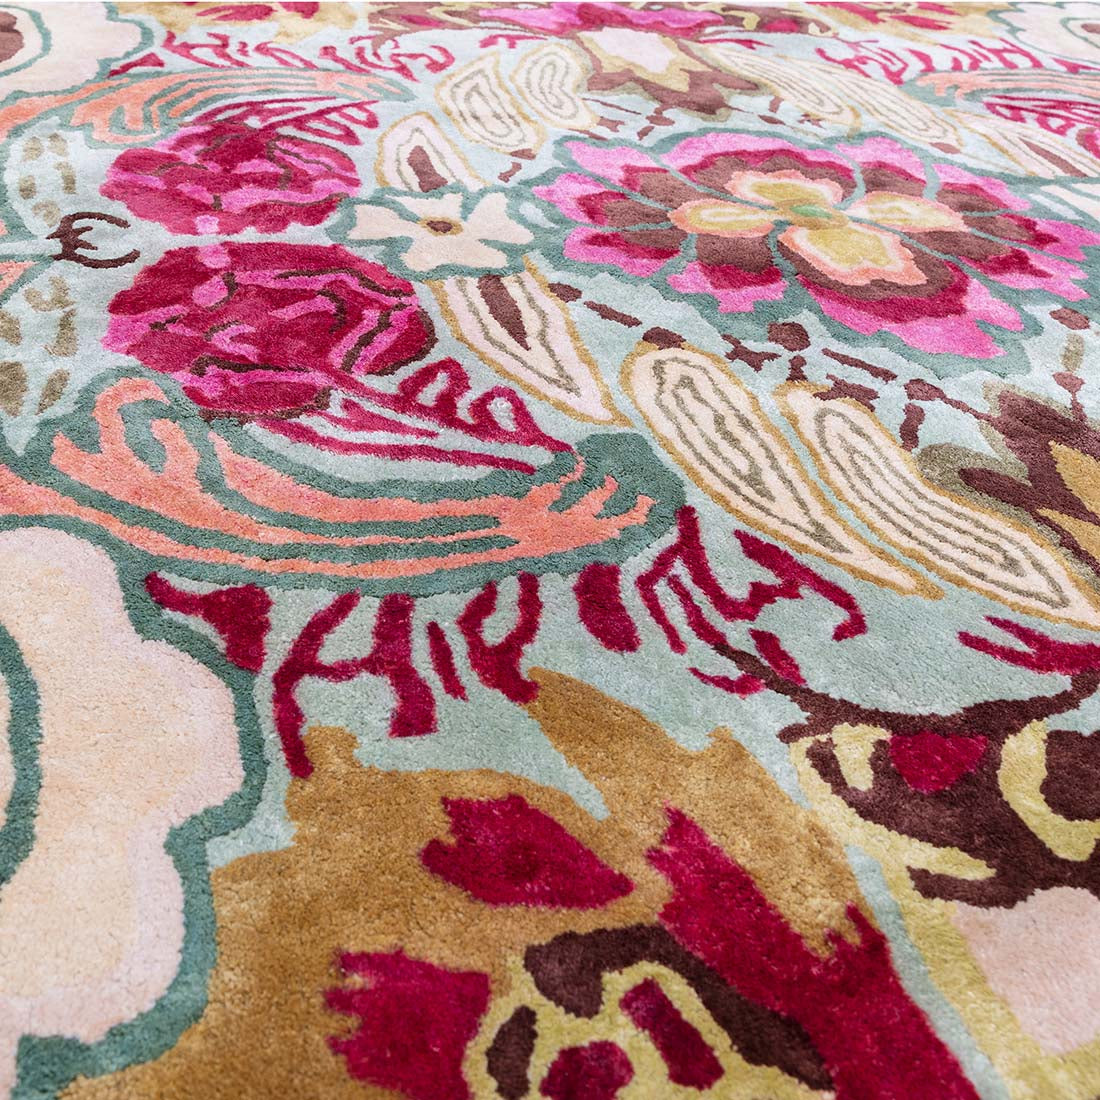 multicolour handtufted modern rug in a floral design
